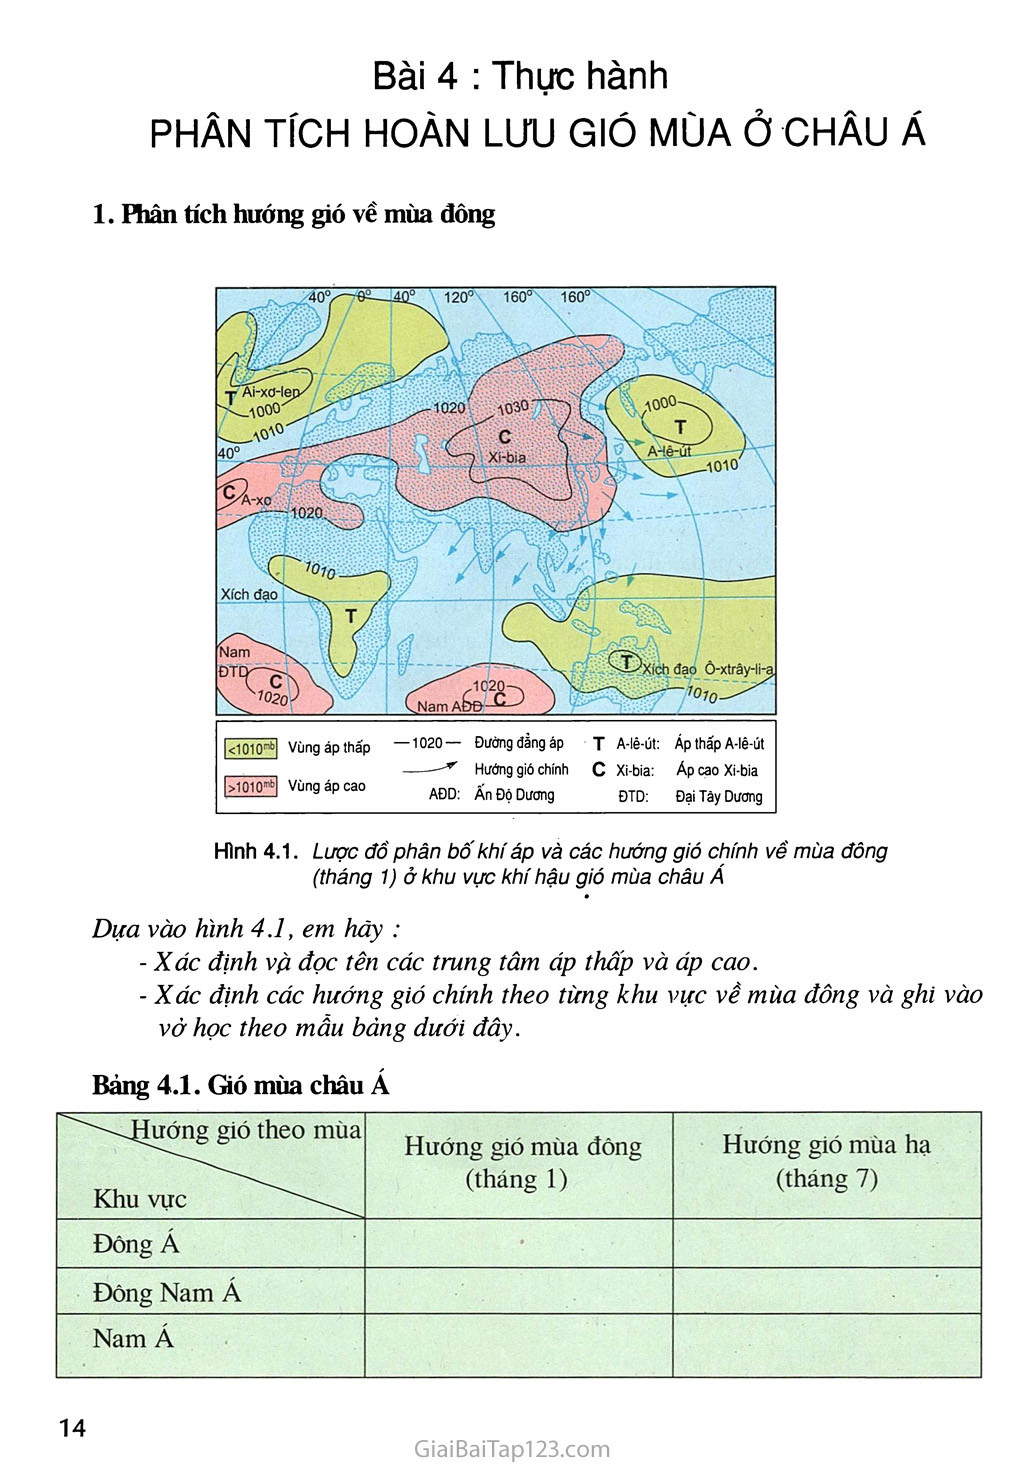 Bài 4. Thực hành: Phân tích hoàn lưu gió mùa ở châu Á trang 1